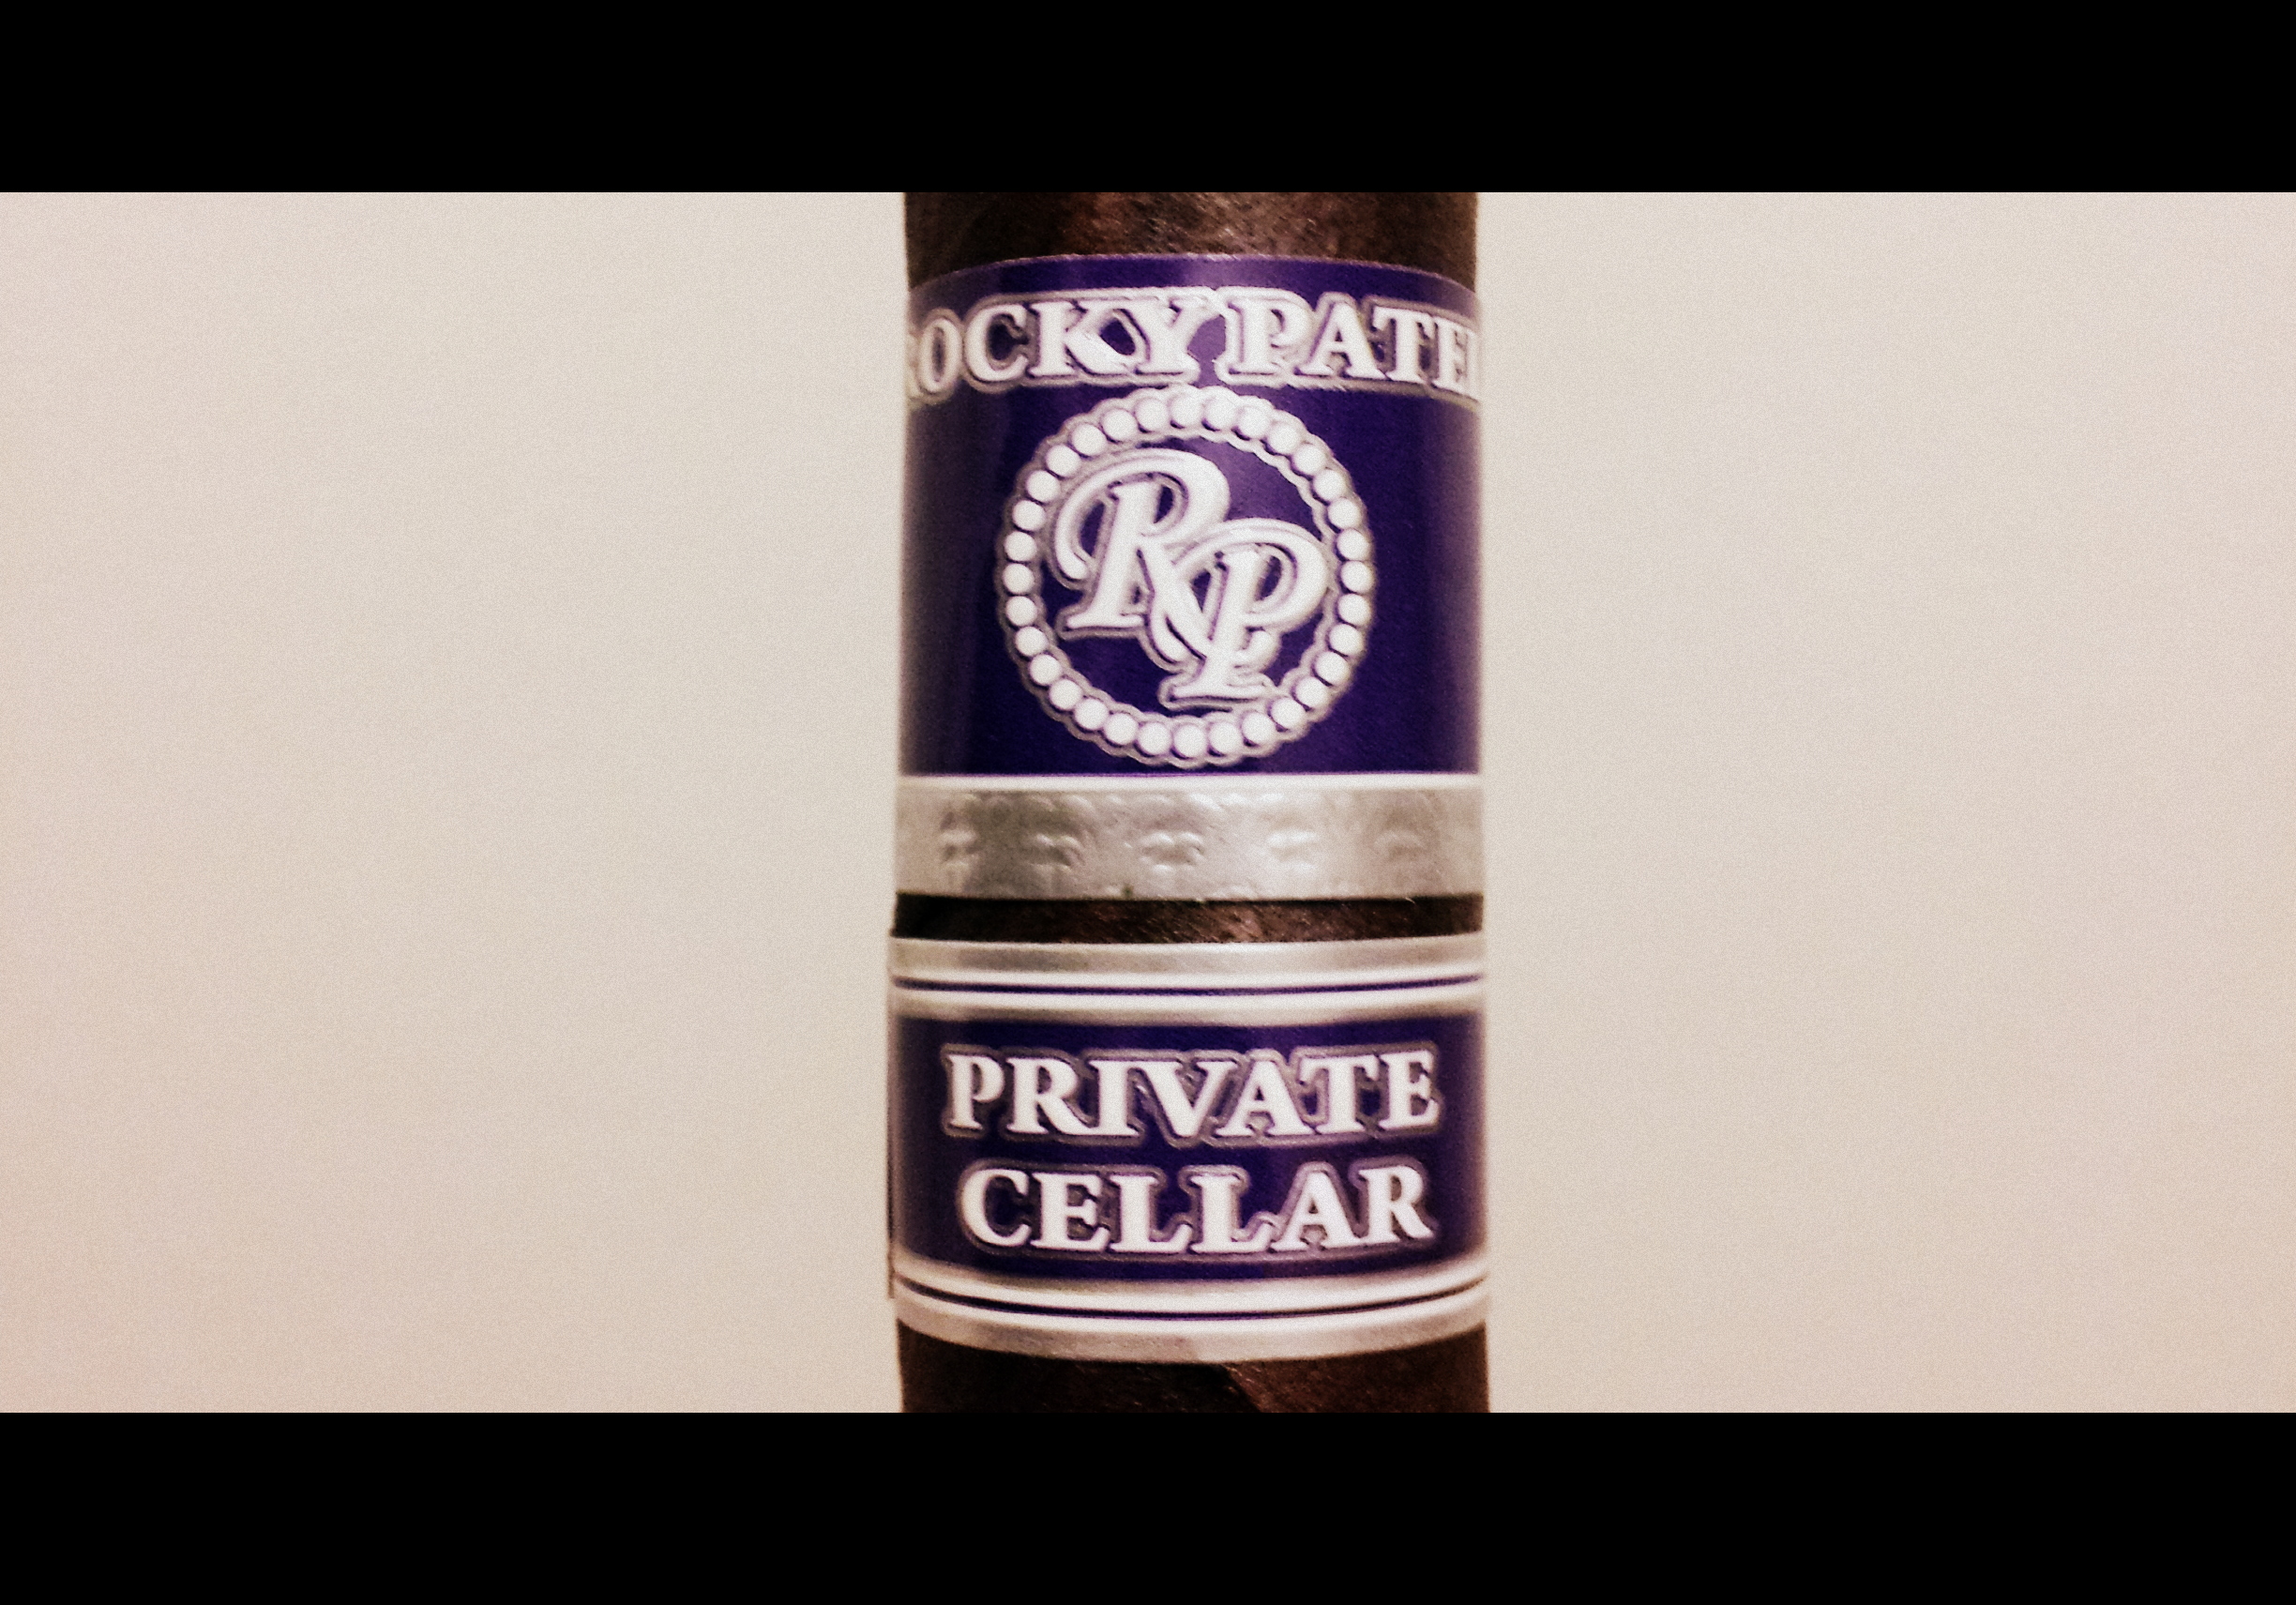 Rocky Patel Private Cellar